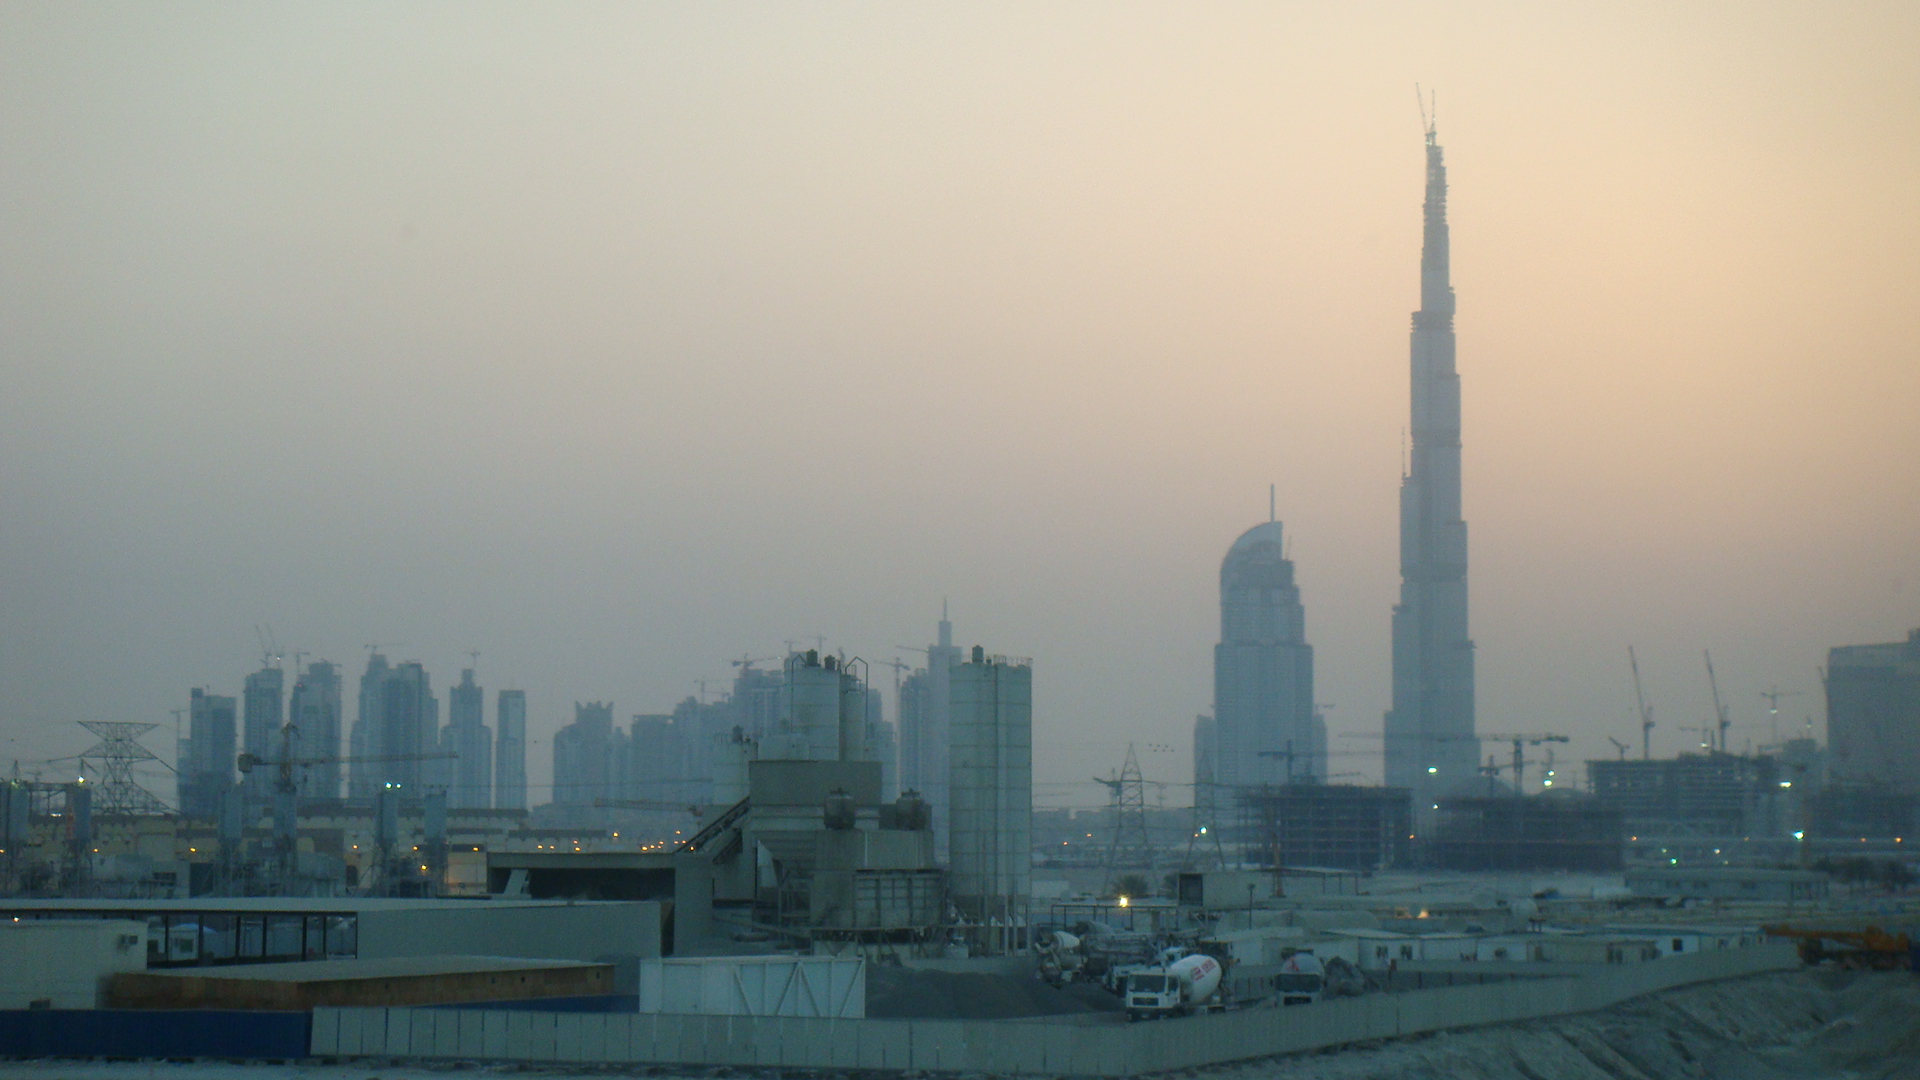 города, архитектура, здания, Дубай, промышленные предприятия, город небоскребов, Бурдж-Халифа - обои на рабочий стол